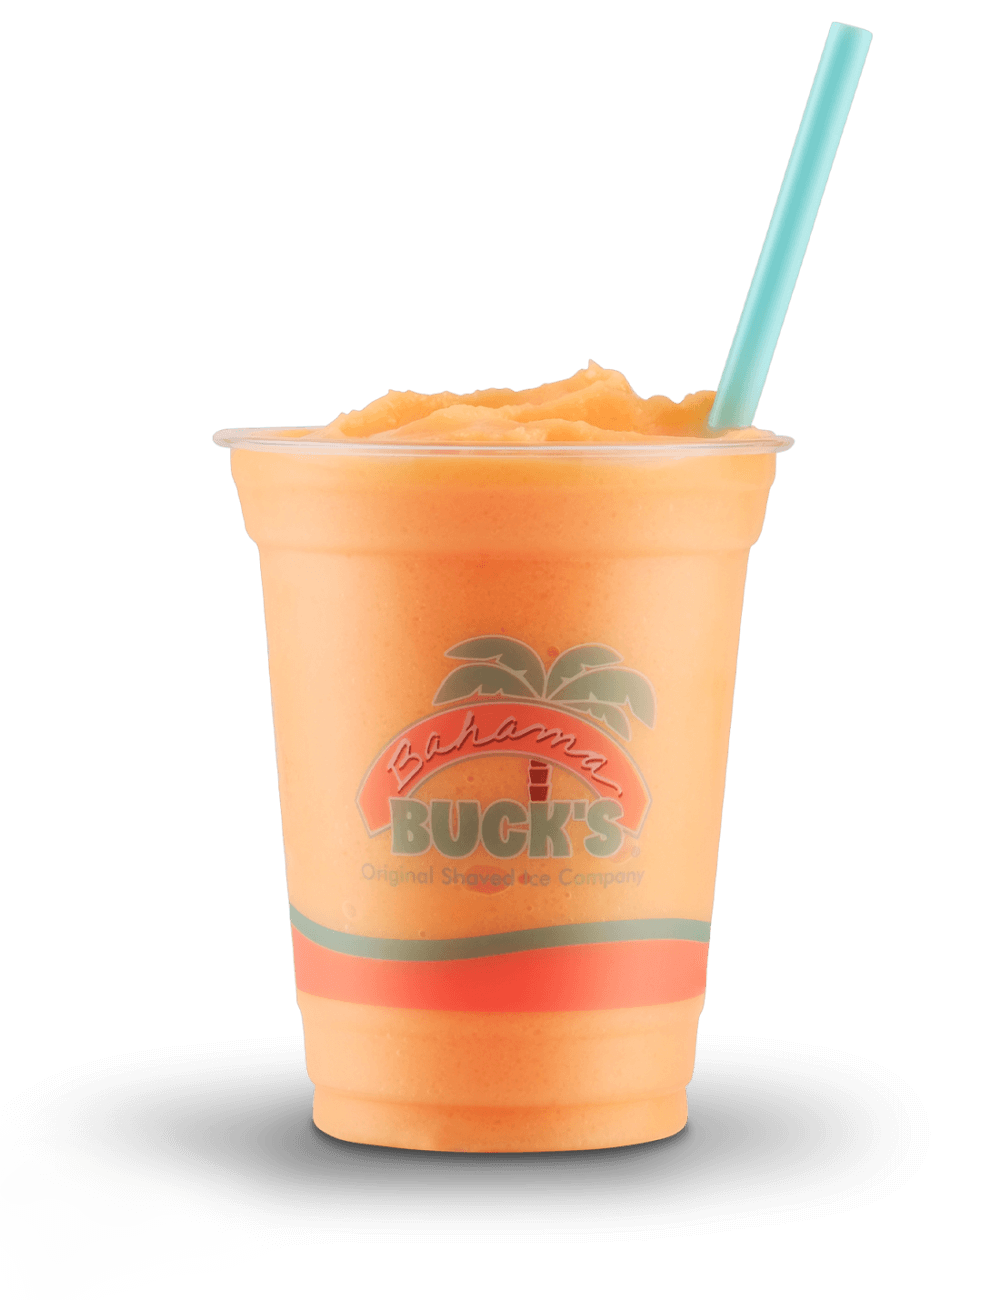 Bahama-Bucks-Mango-Tango-Smoothie